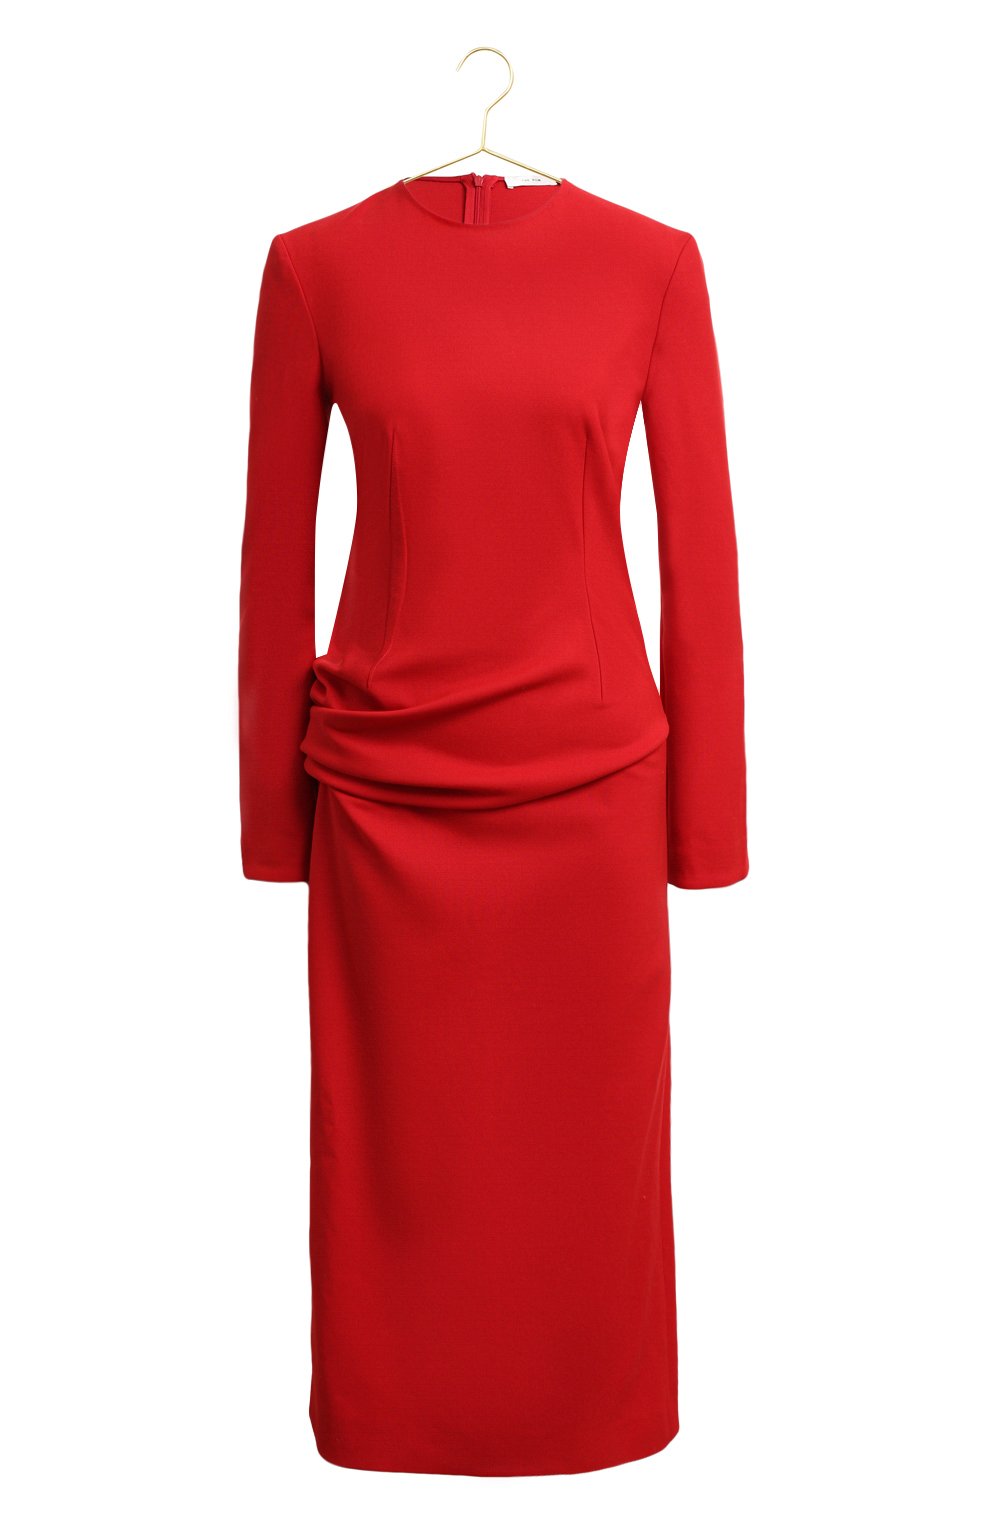 Michael Kors красное платье трикотажное. Красное платье футляр. Платье с драпировкой. Платье с ассиметричной драпировкой.